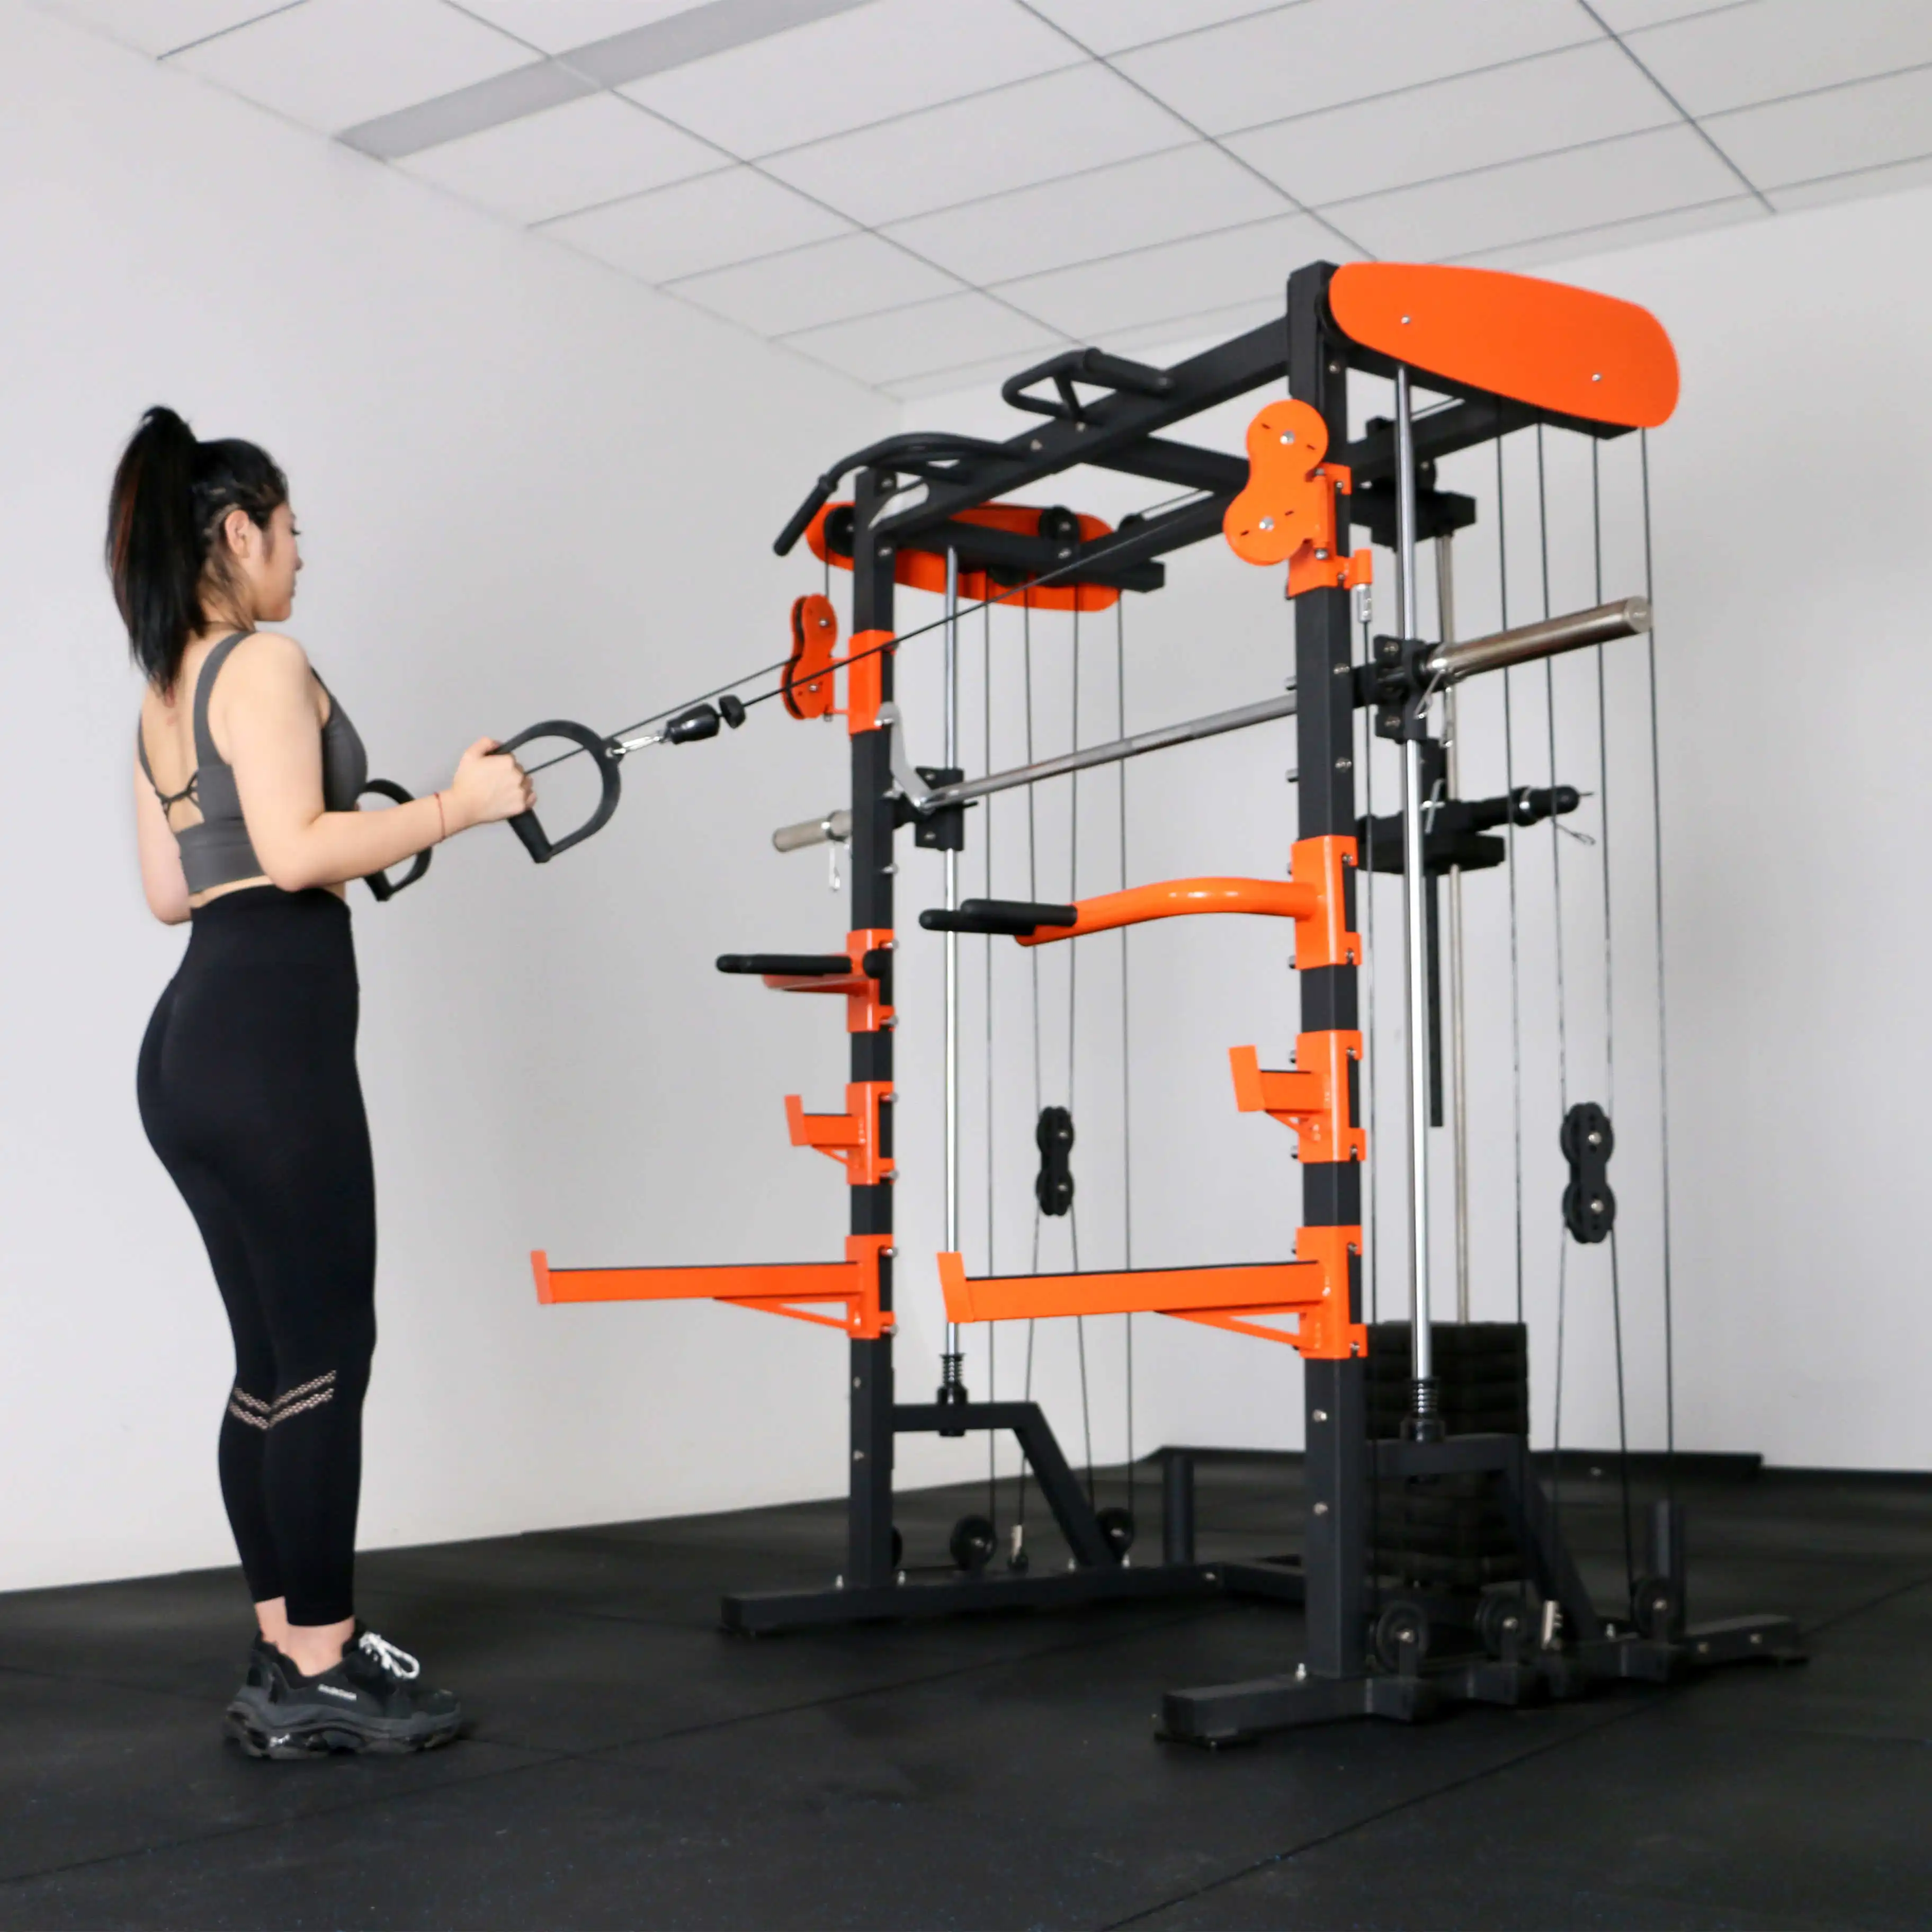 EMFitness équipement de Fitness à usage Commercial, traction Lat vers le bas et support de squat à poulie horizontale assis